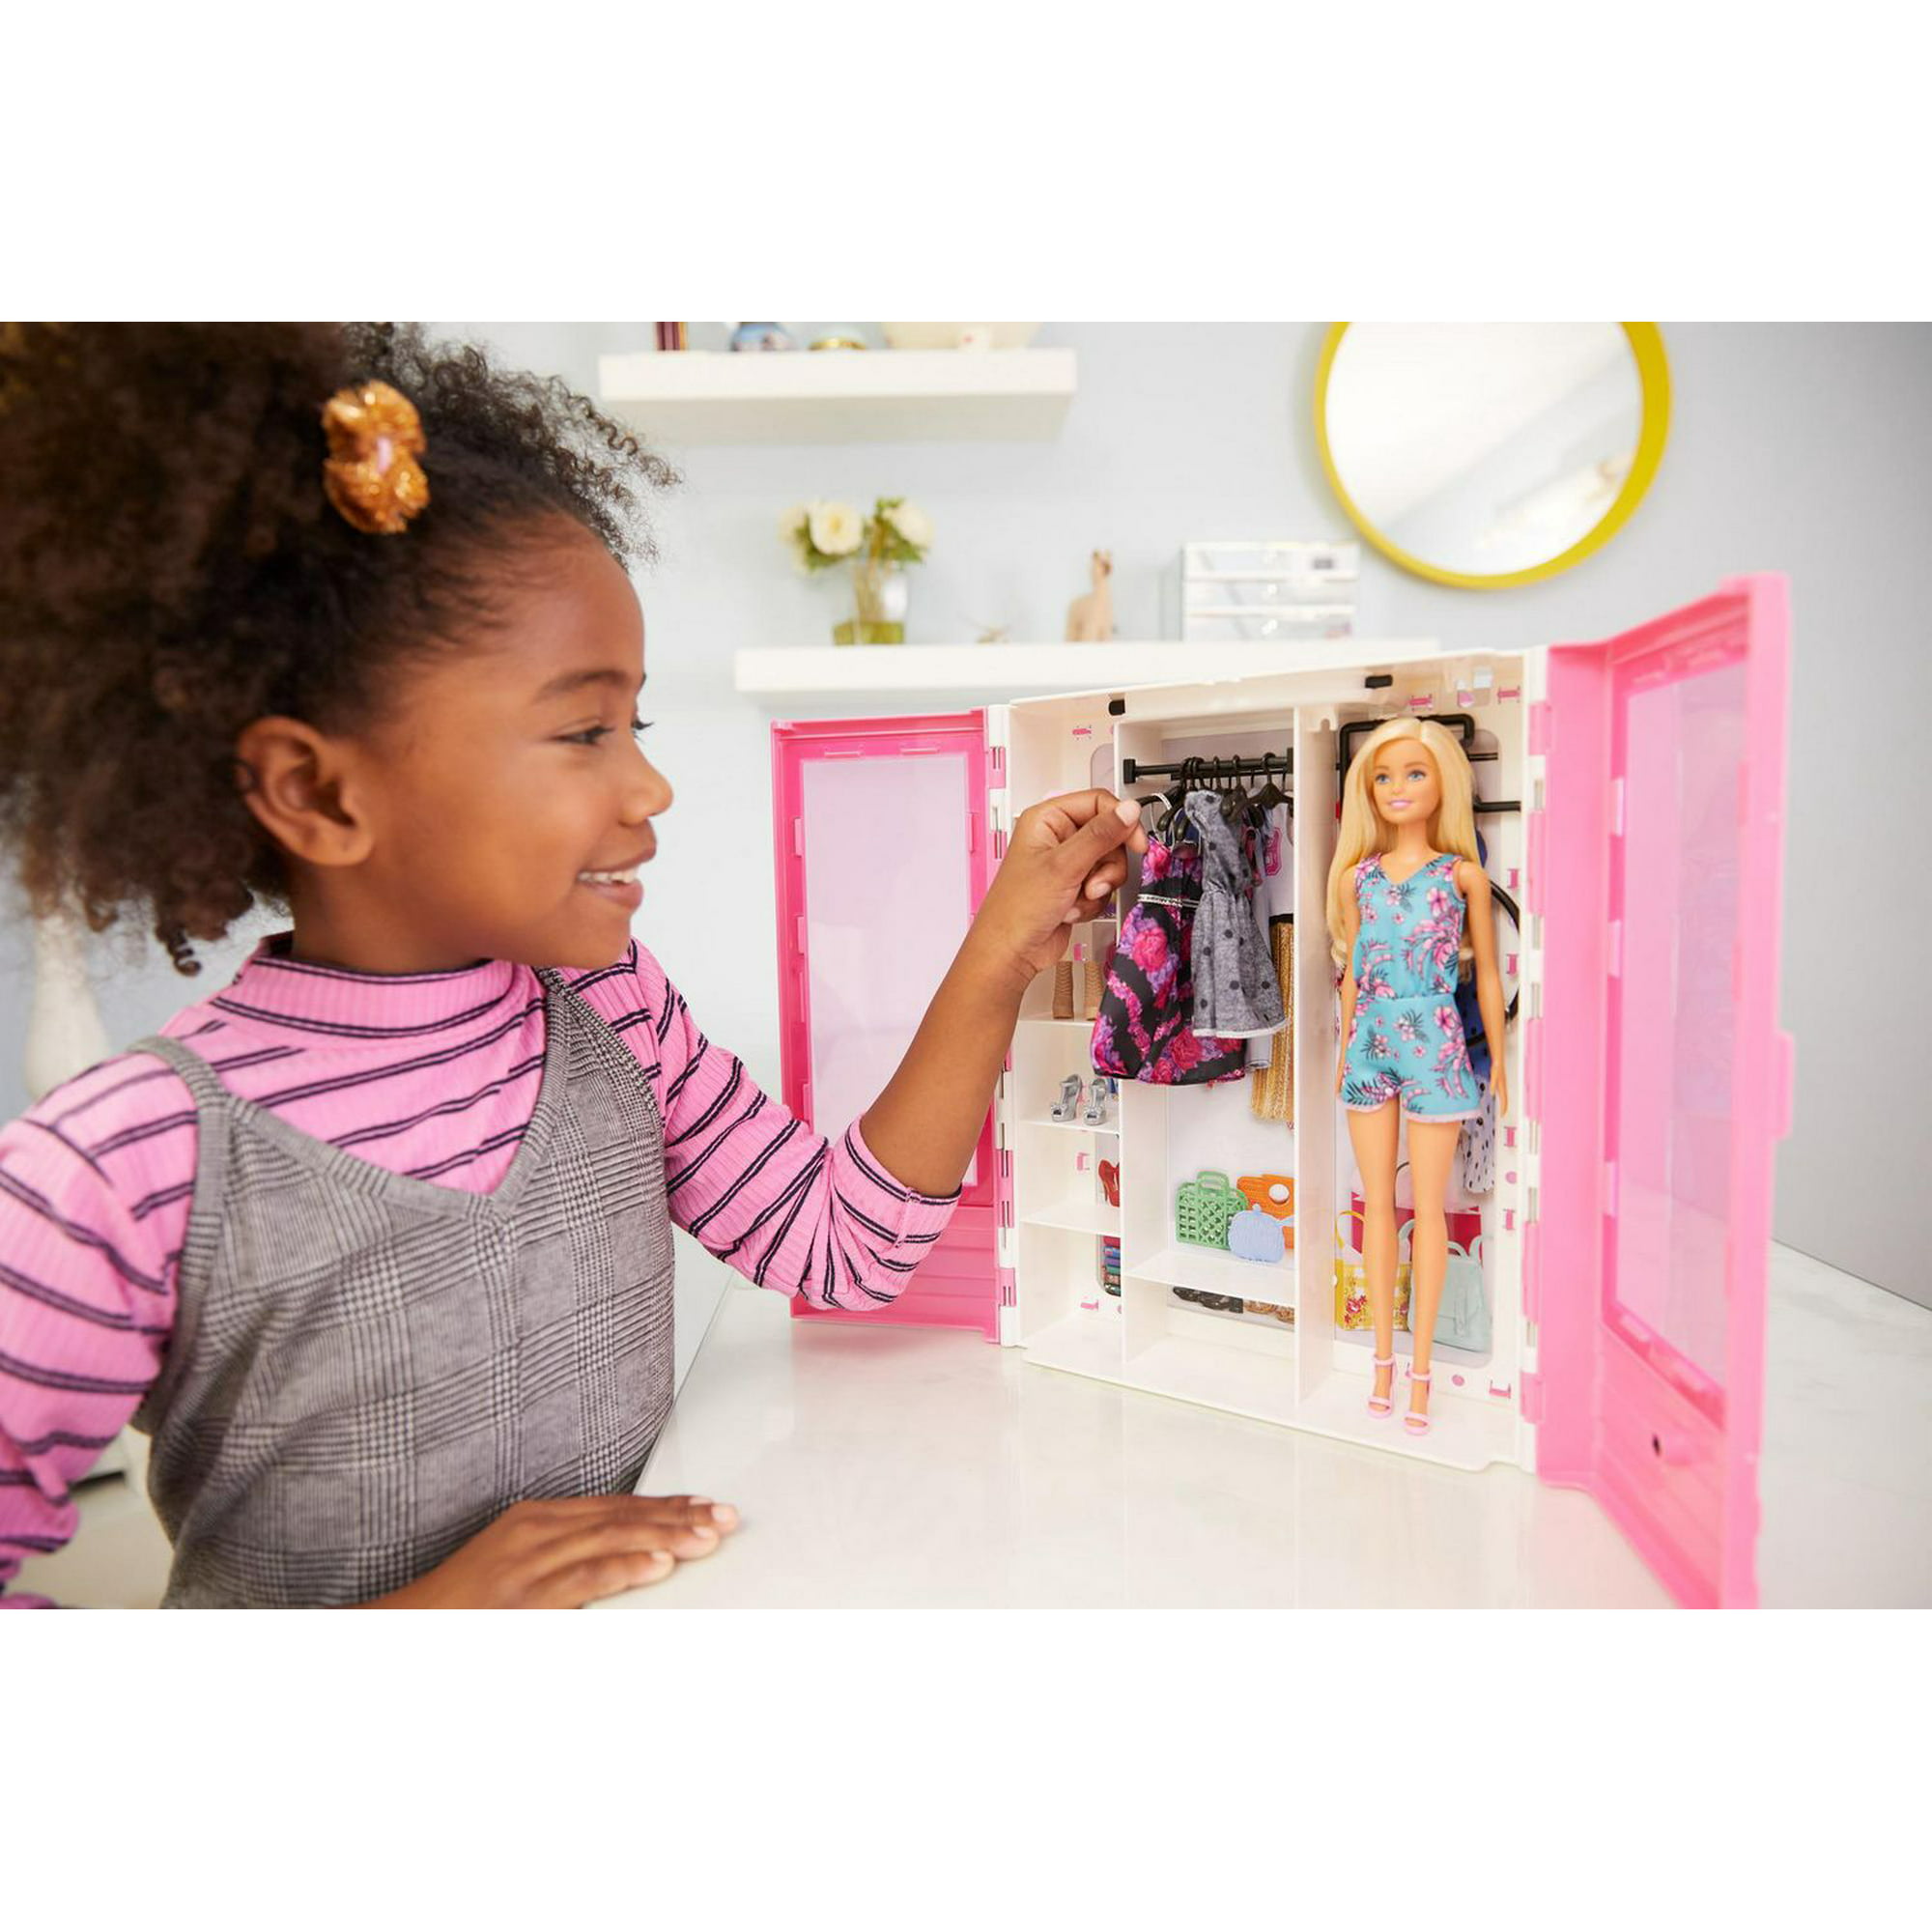 Mattel - Barbie Fashionistas Ultimate Closet com roupas da Barbie